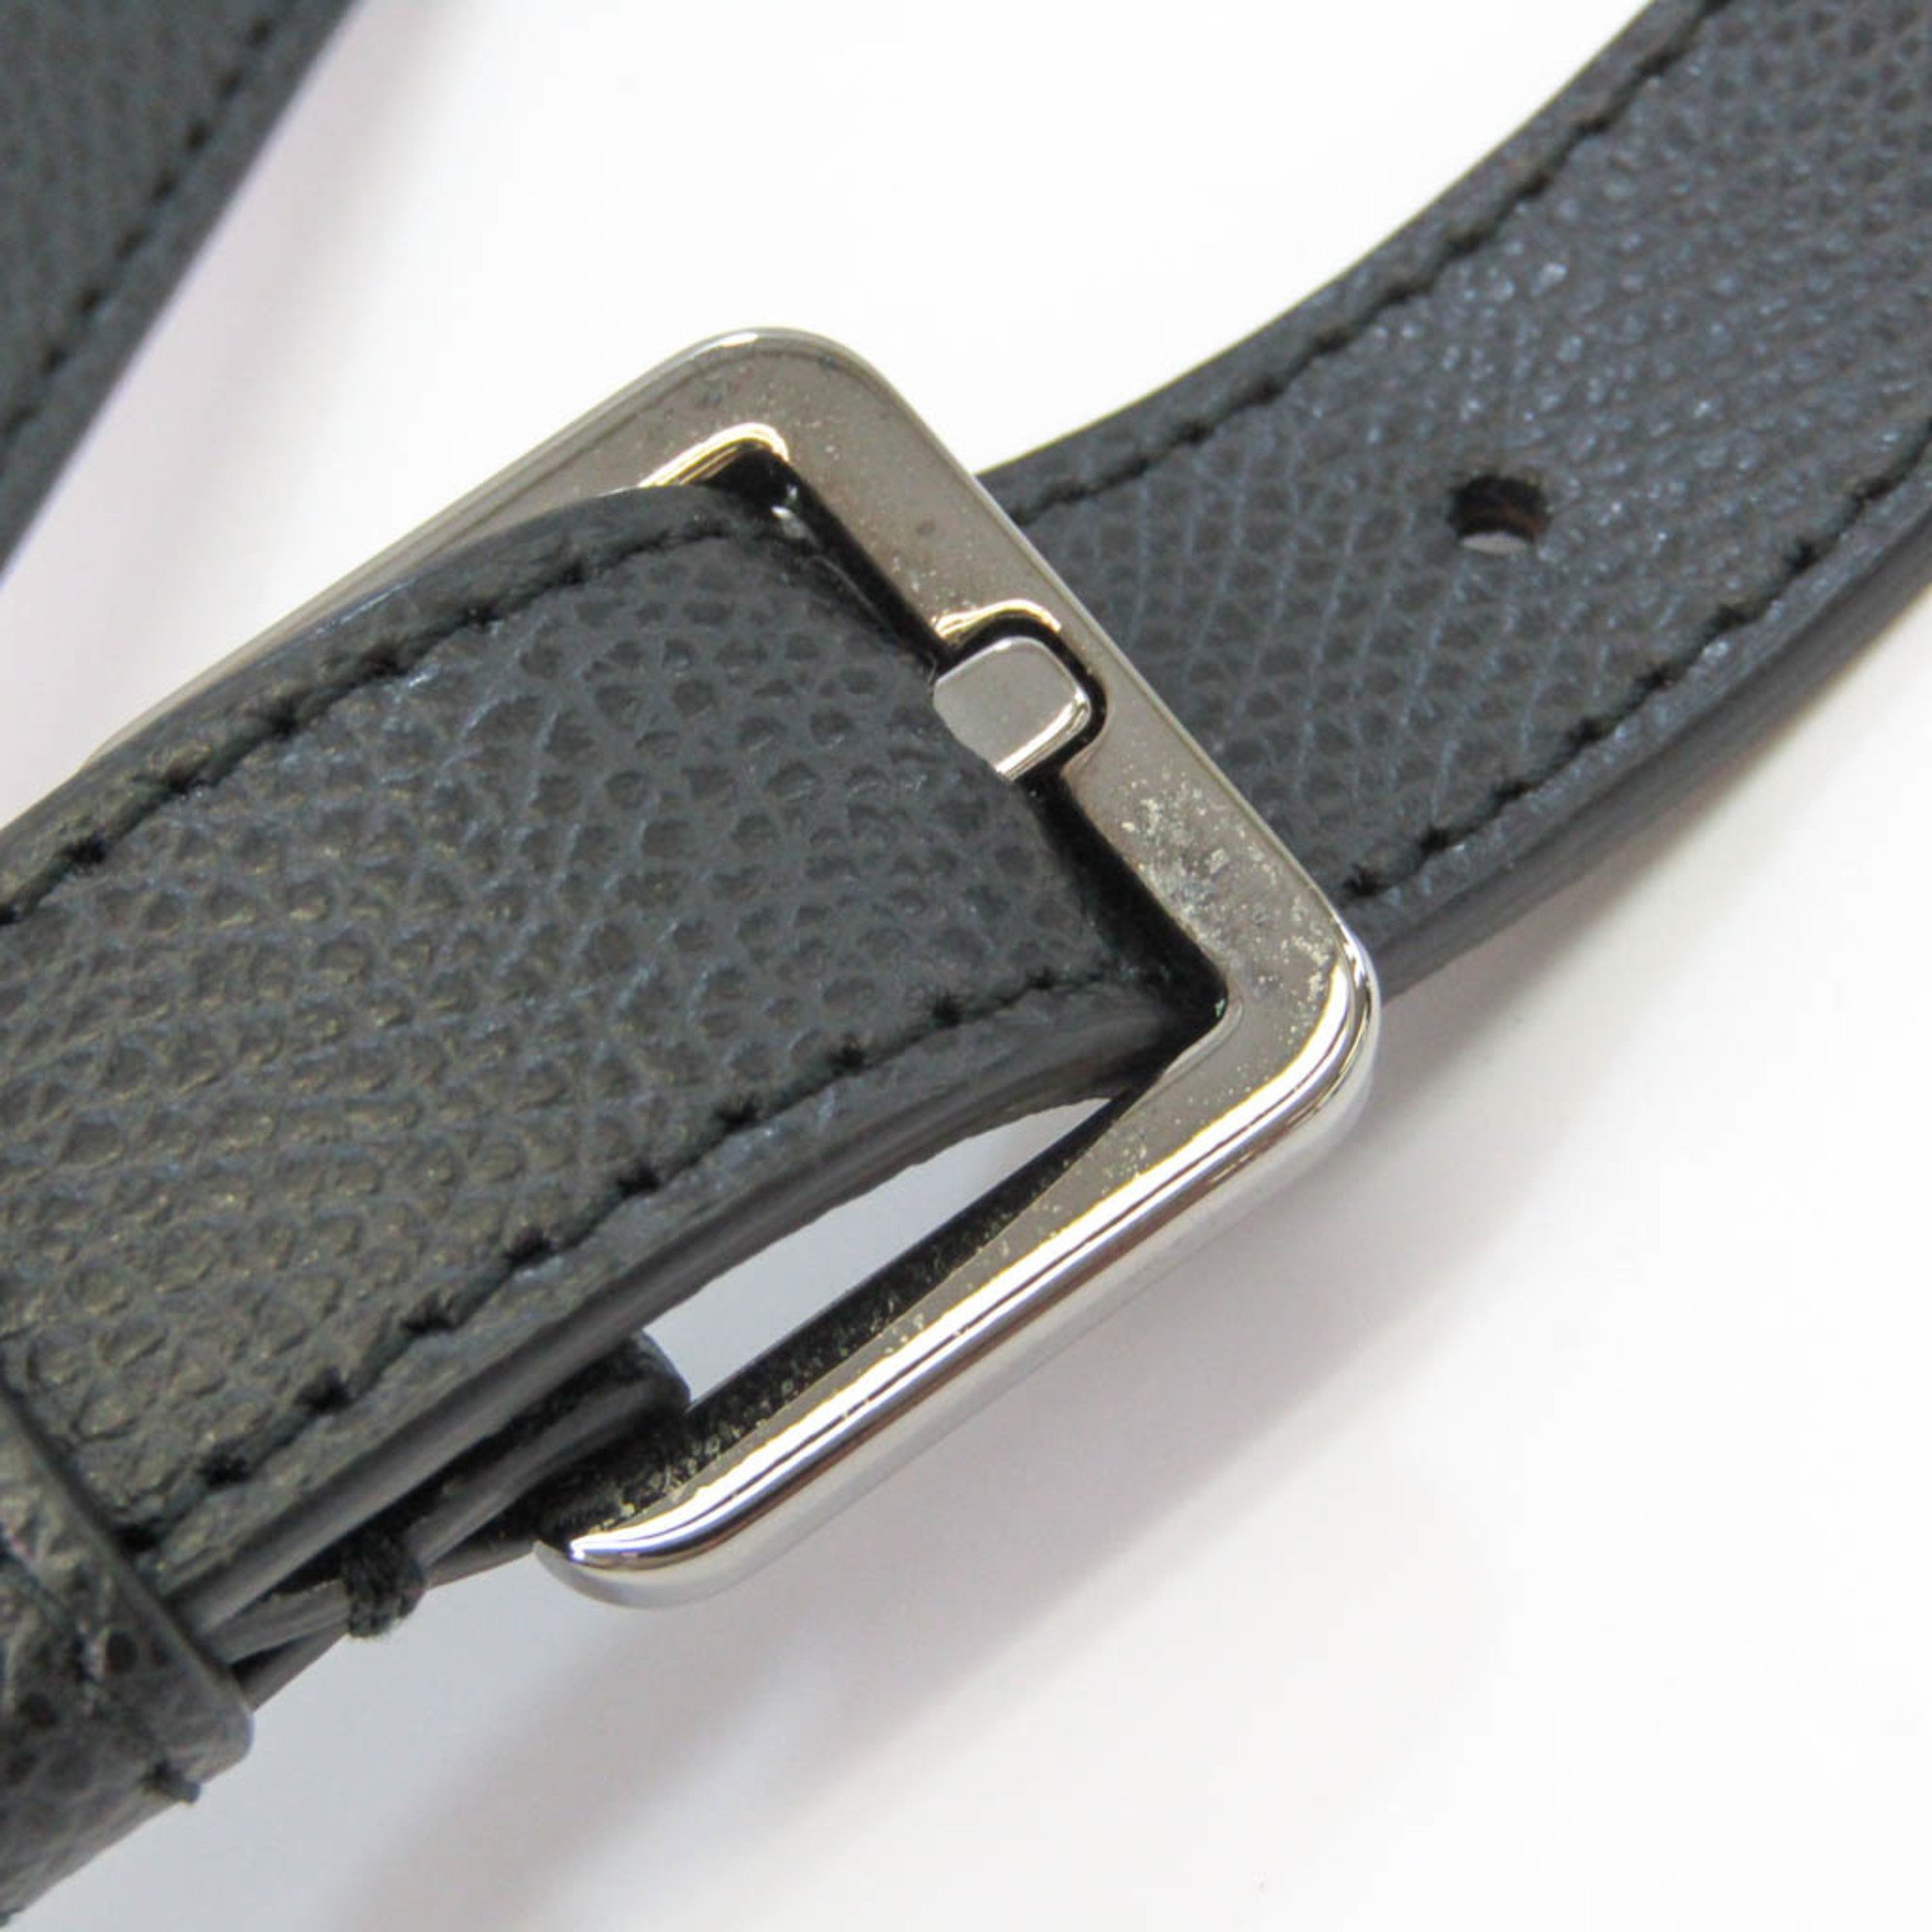 Furla Atlant 901436 Unisex Leather Attaché Case,Shoulder Bag Black